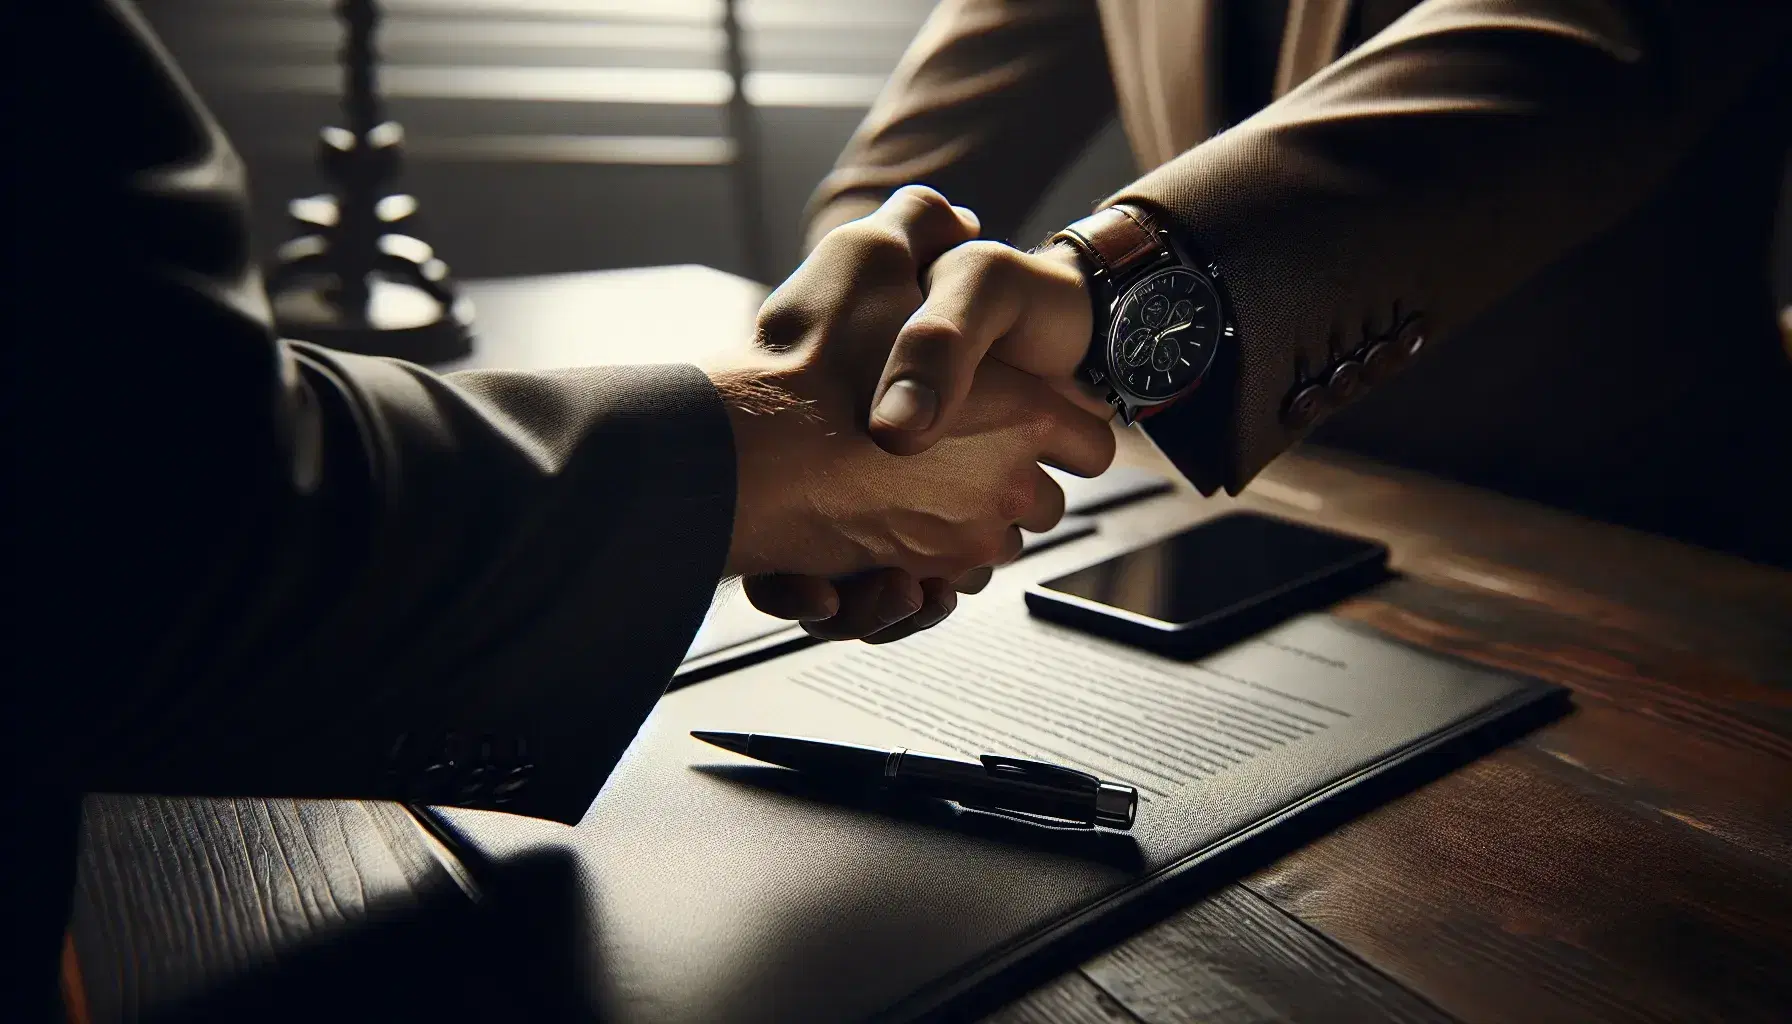 Apretón de manos entre dos personas, una con guante de traje y la otra con reloj de pulsera, sobre mesa de madera con smartphone y bolígrafo.